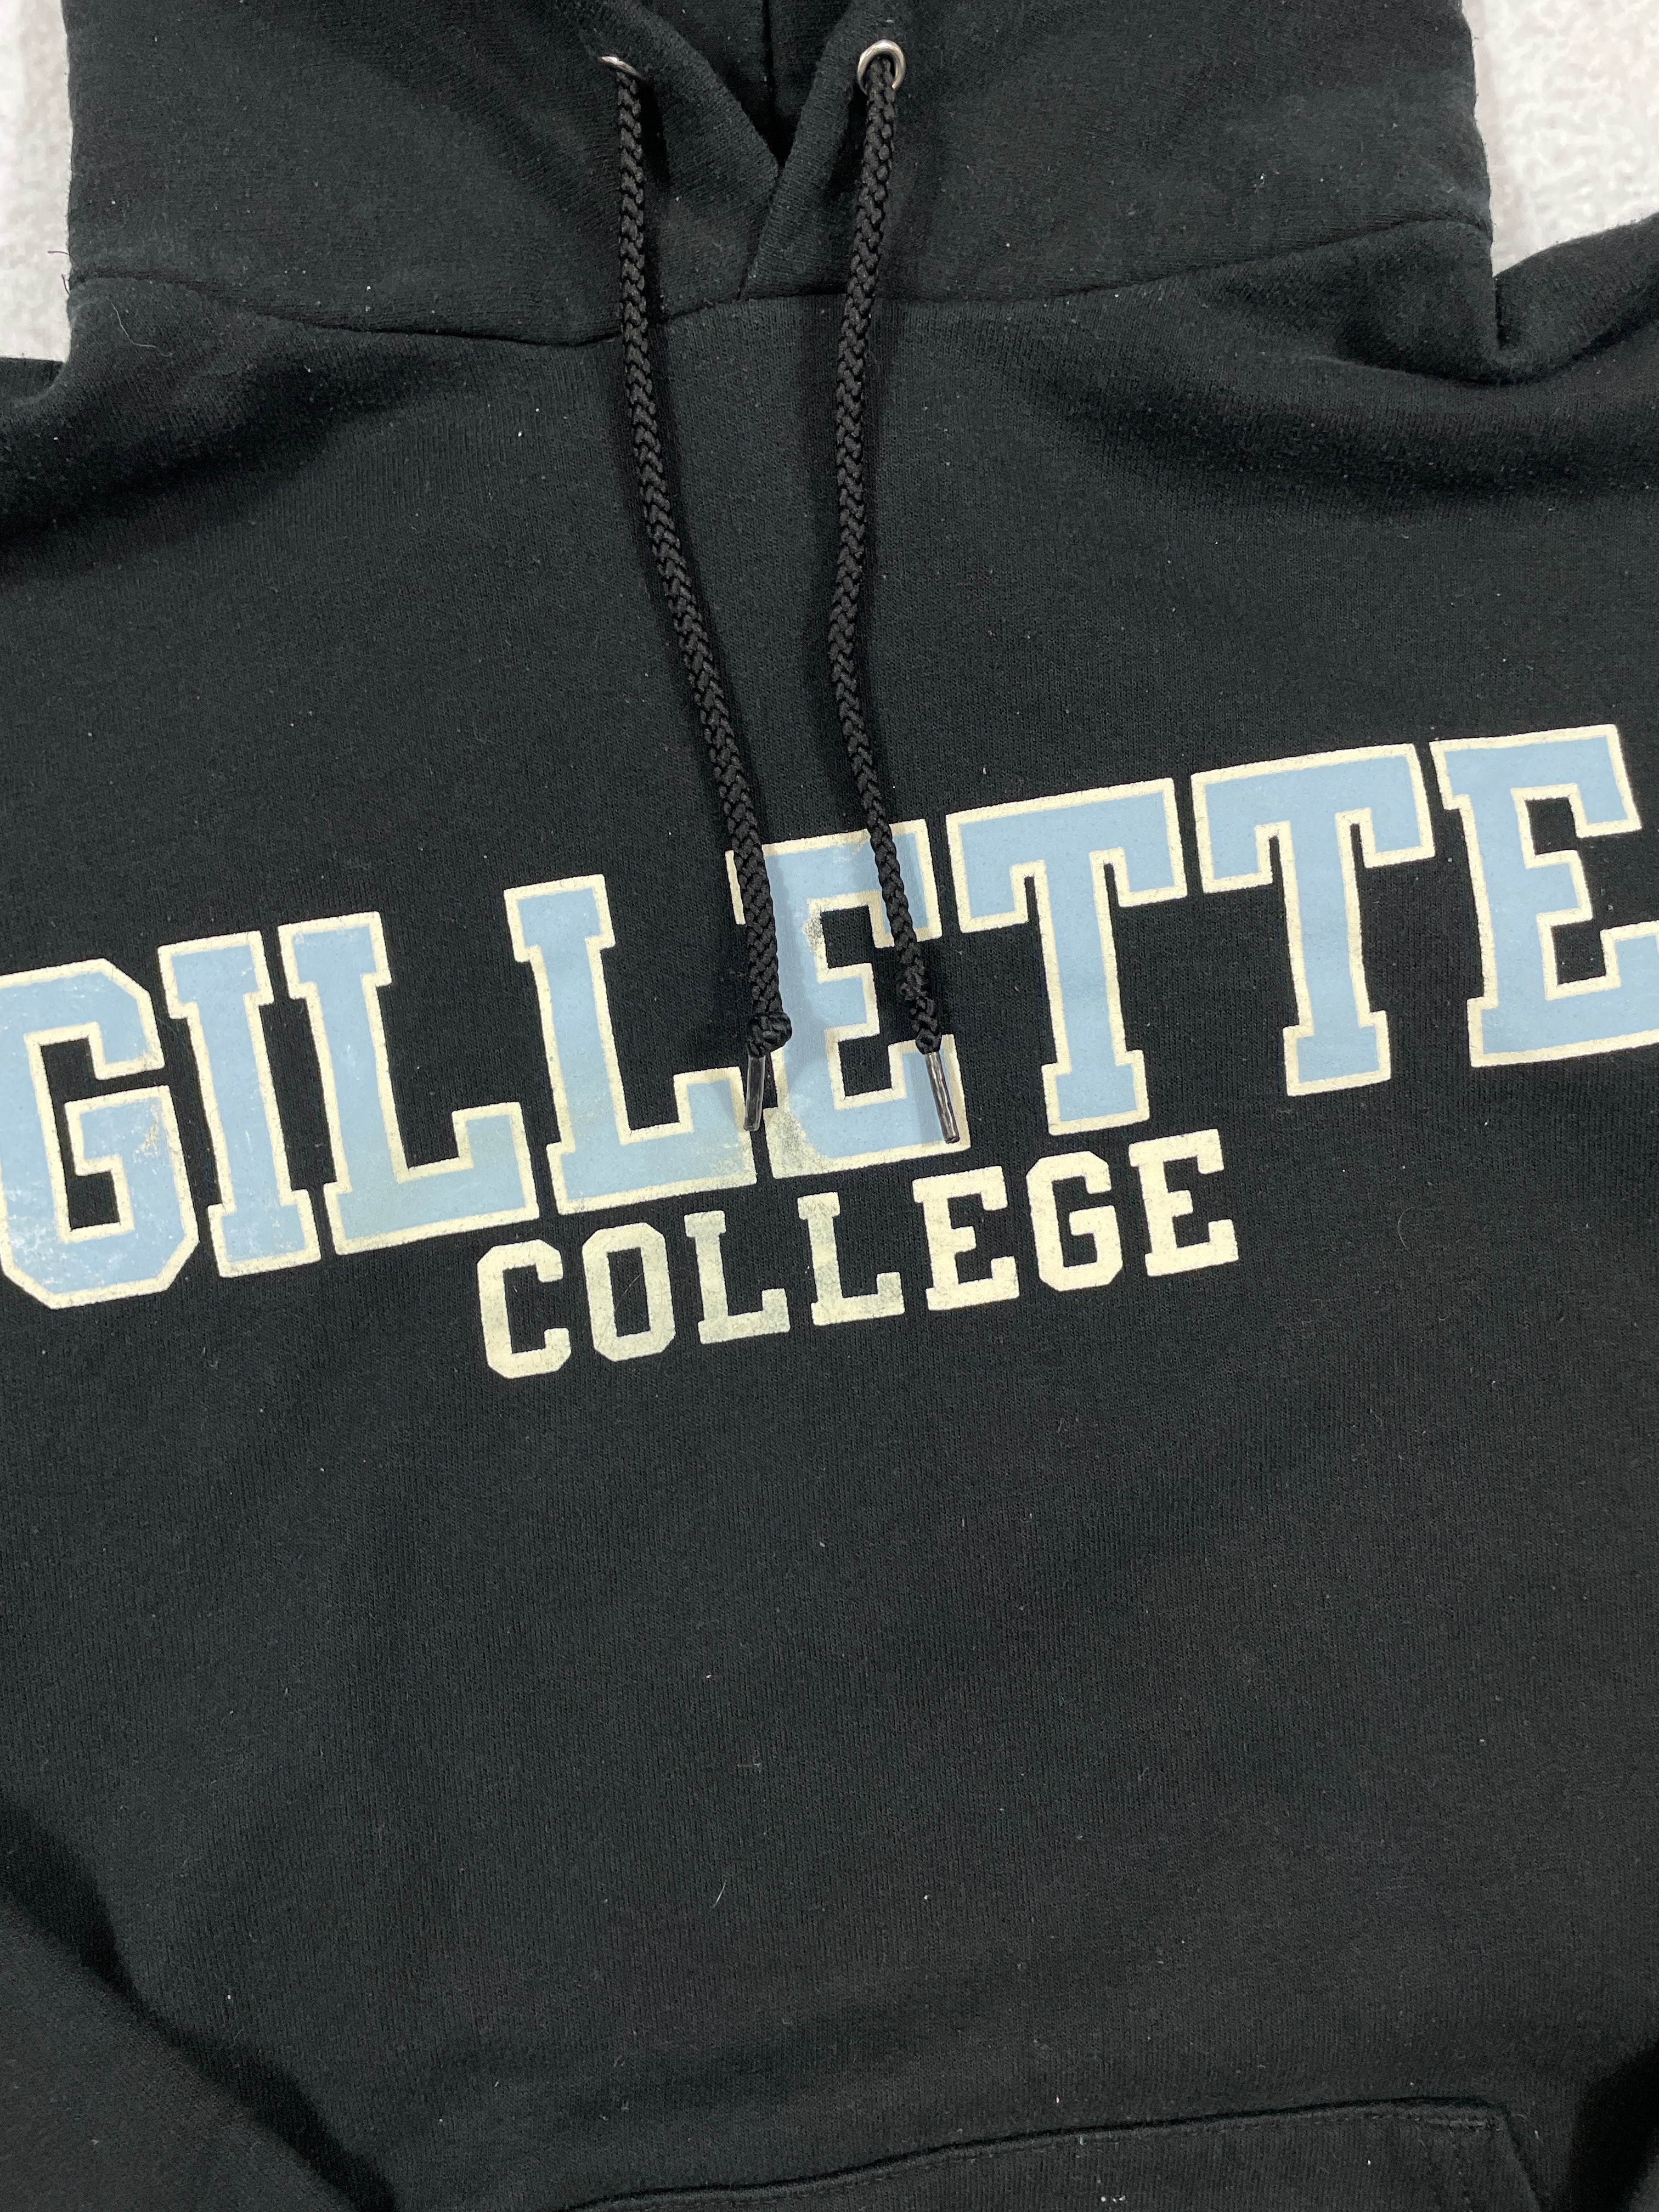 Vintage Champion Gillette College Hoodie - Men's Medium